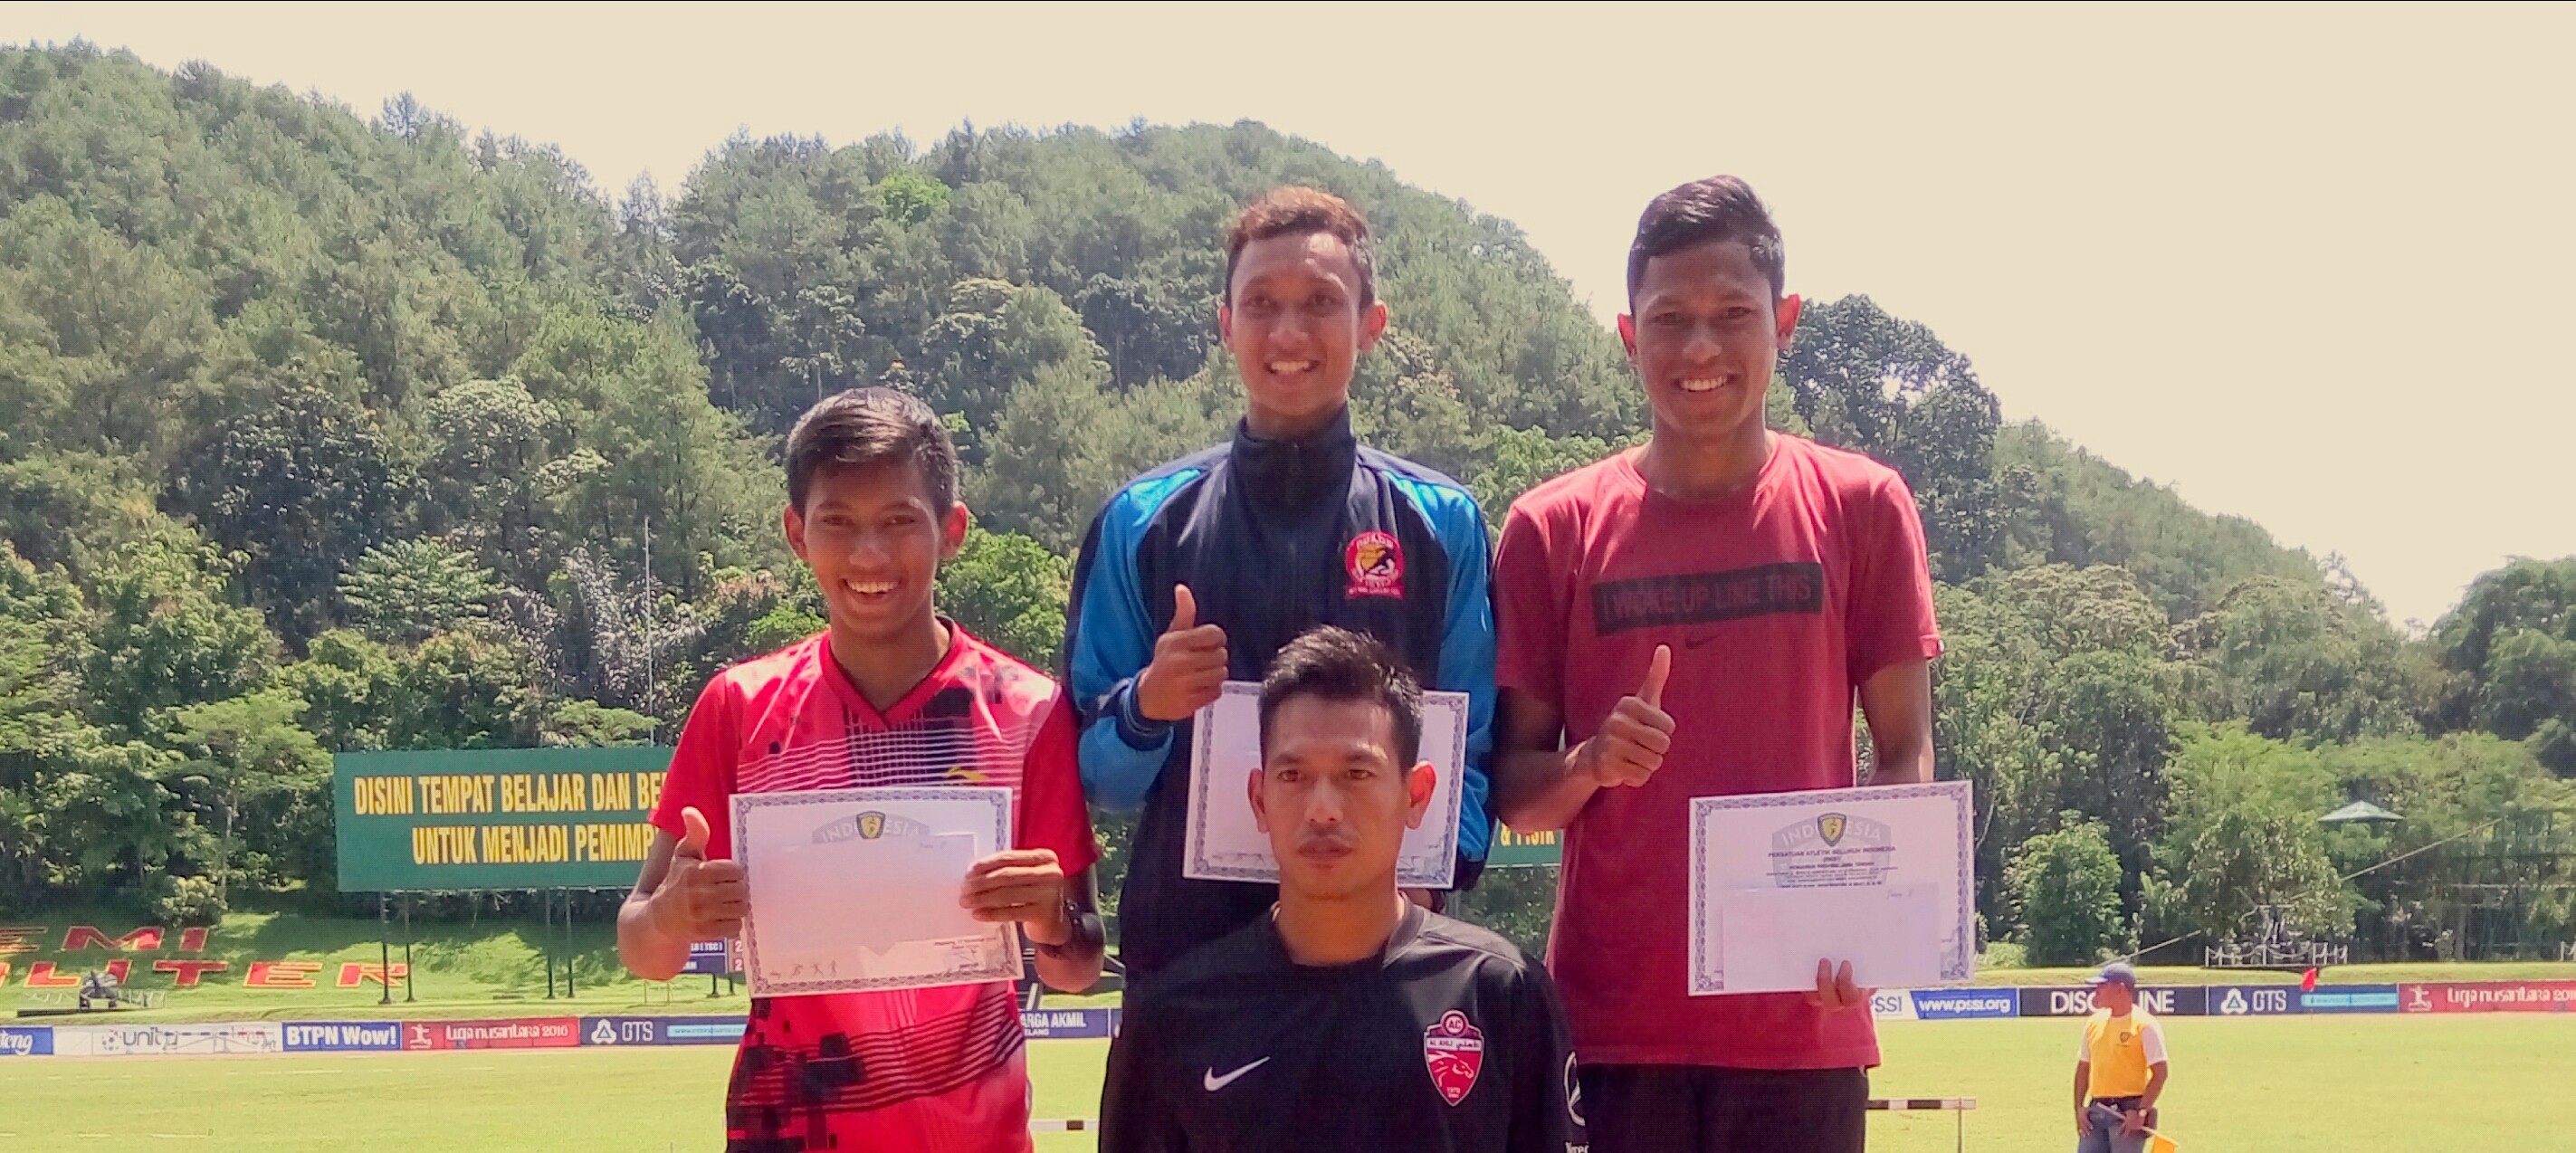 Foto Kejuaraan Atletik Daerah Jawa Tengah KEJURPROV tahun 2016